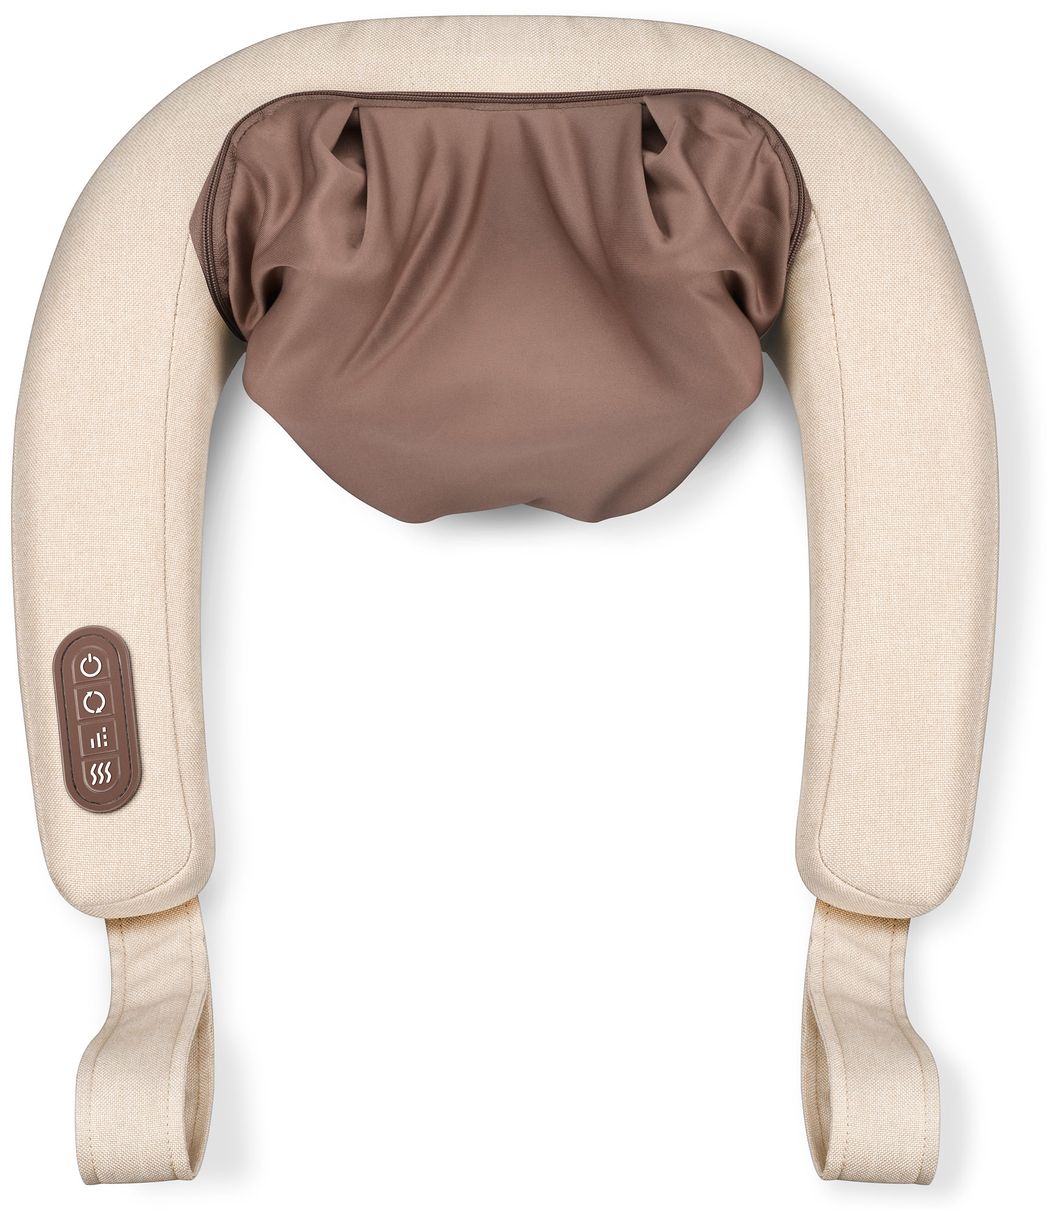 MG153 Nacken-Massagegerät Knet-Massage für Nacken & Schultern mit 